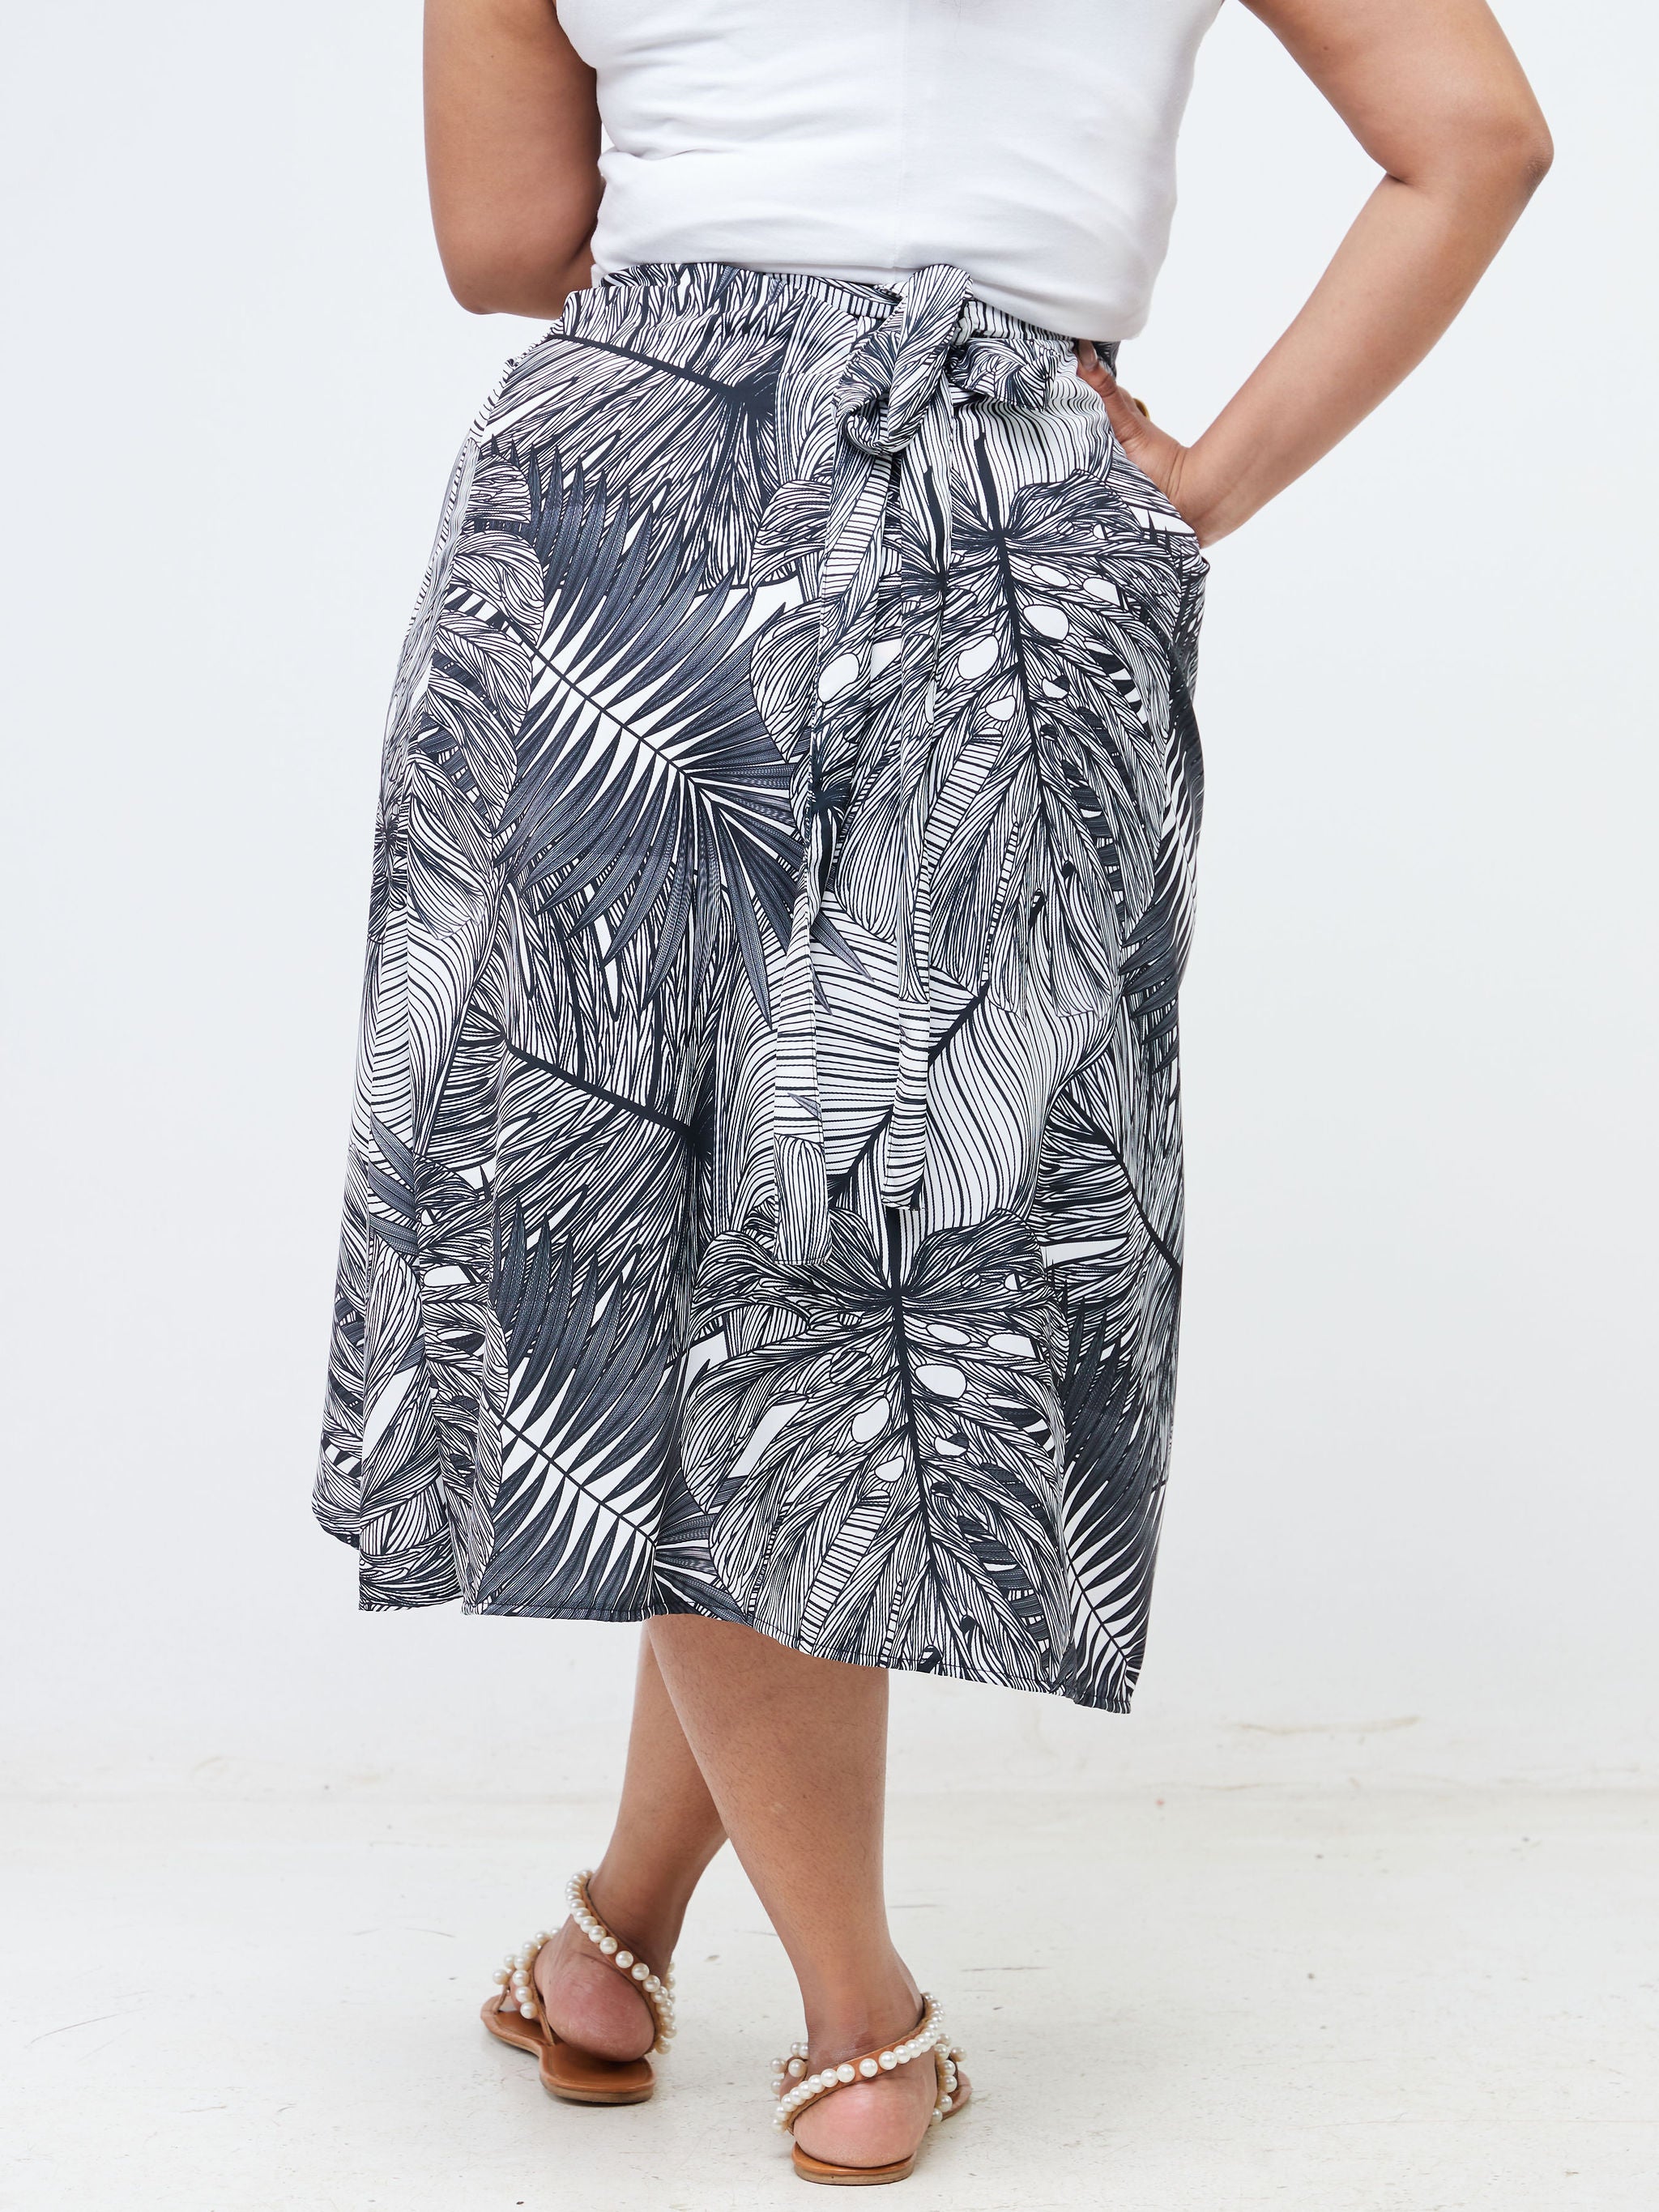 Vivo Malindi Wrap Skirt (JK) - Black / White Tropical Floral Print